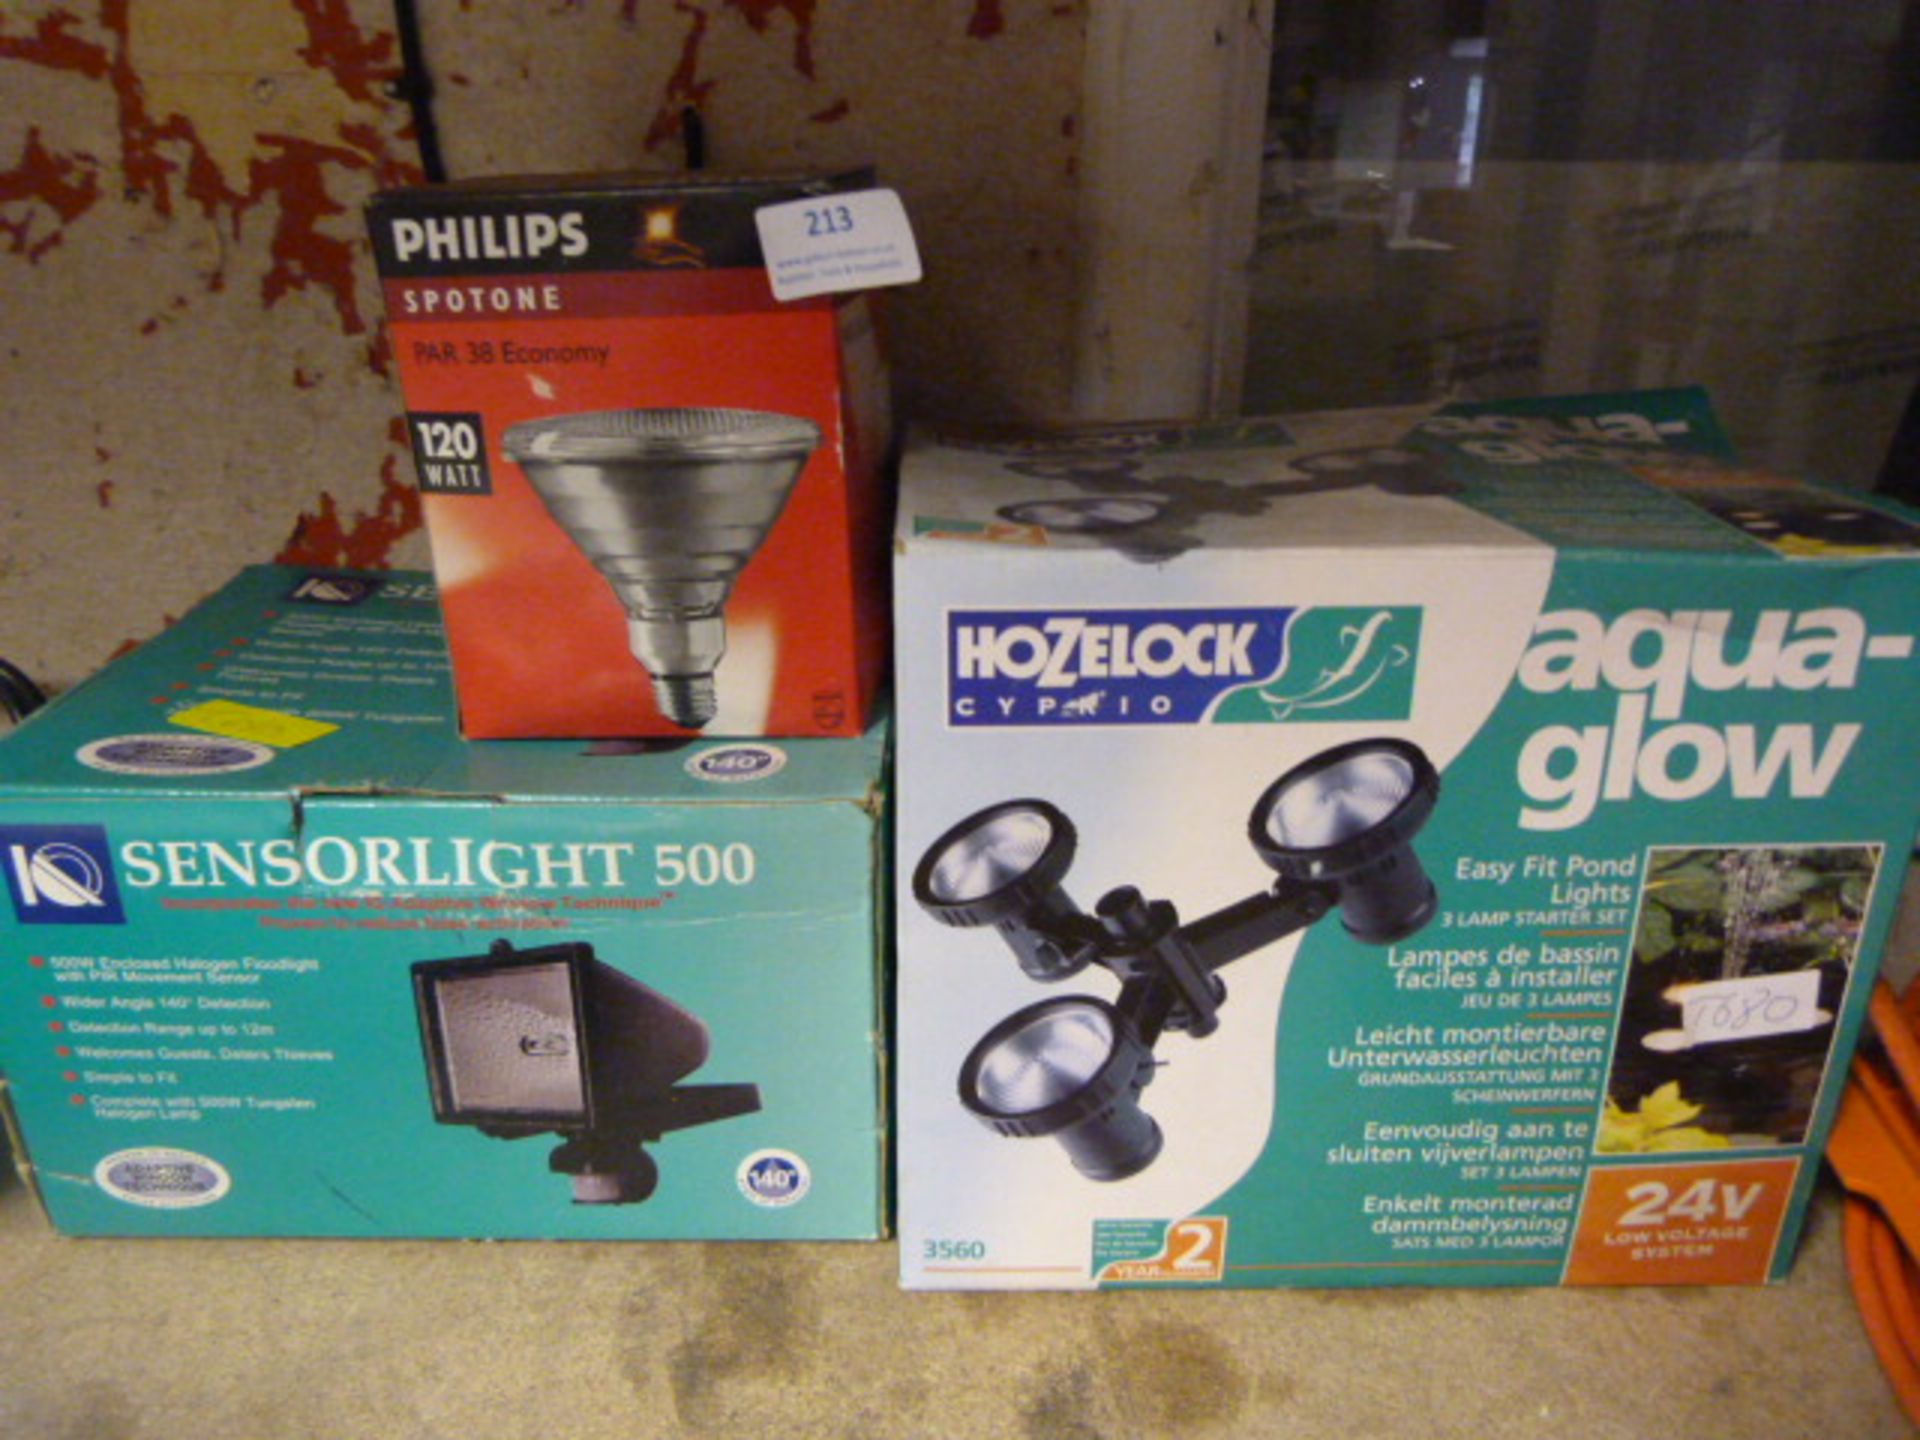 Hozelock Aquaglow Light, Sensor Light 500, and a P